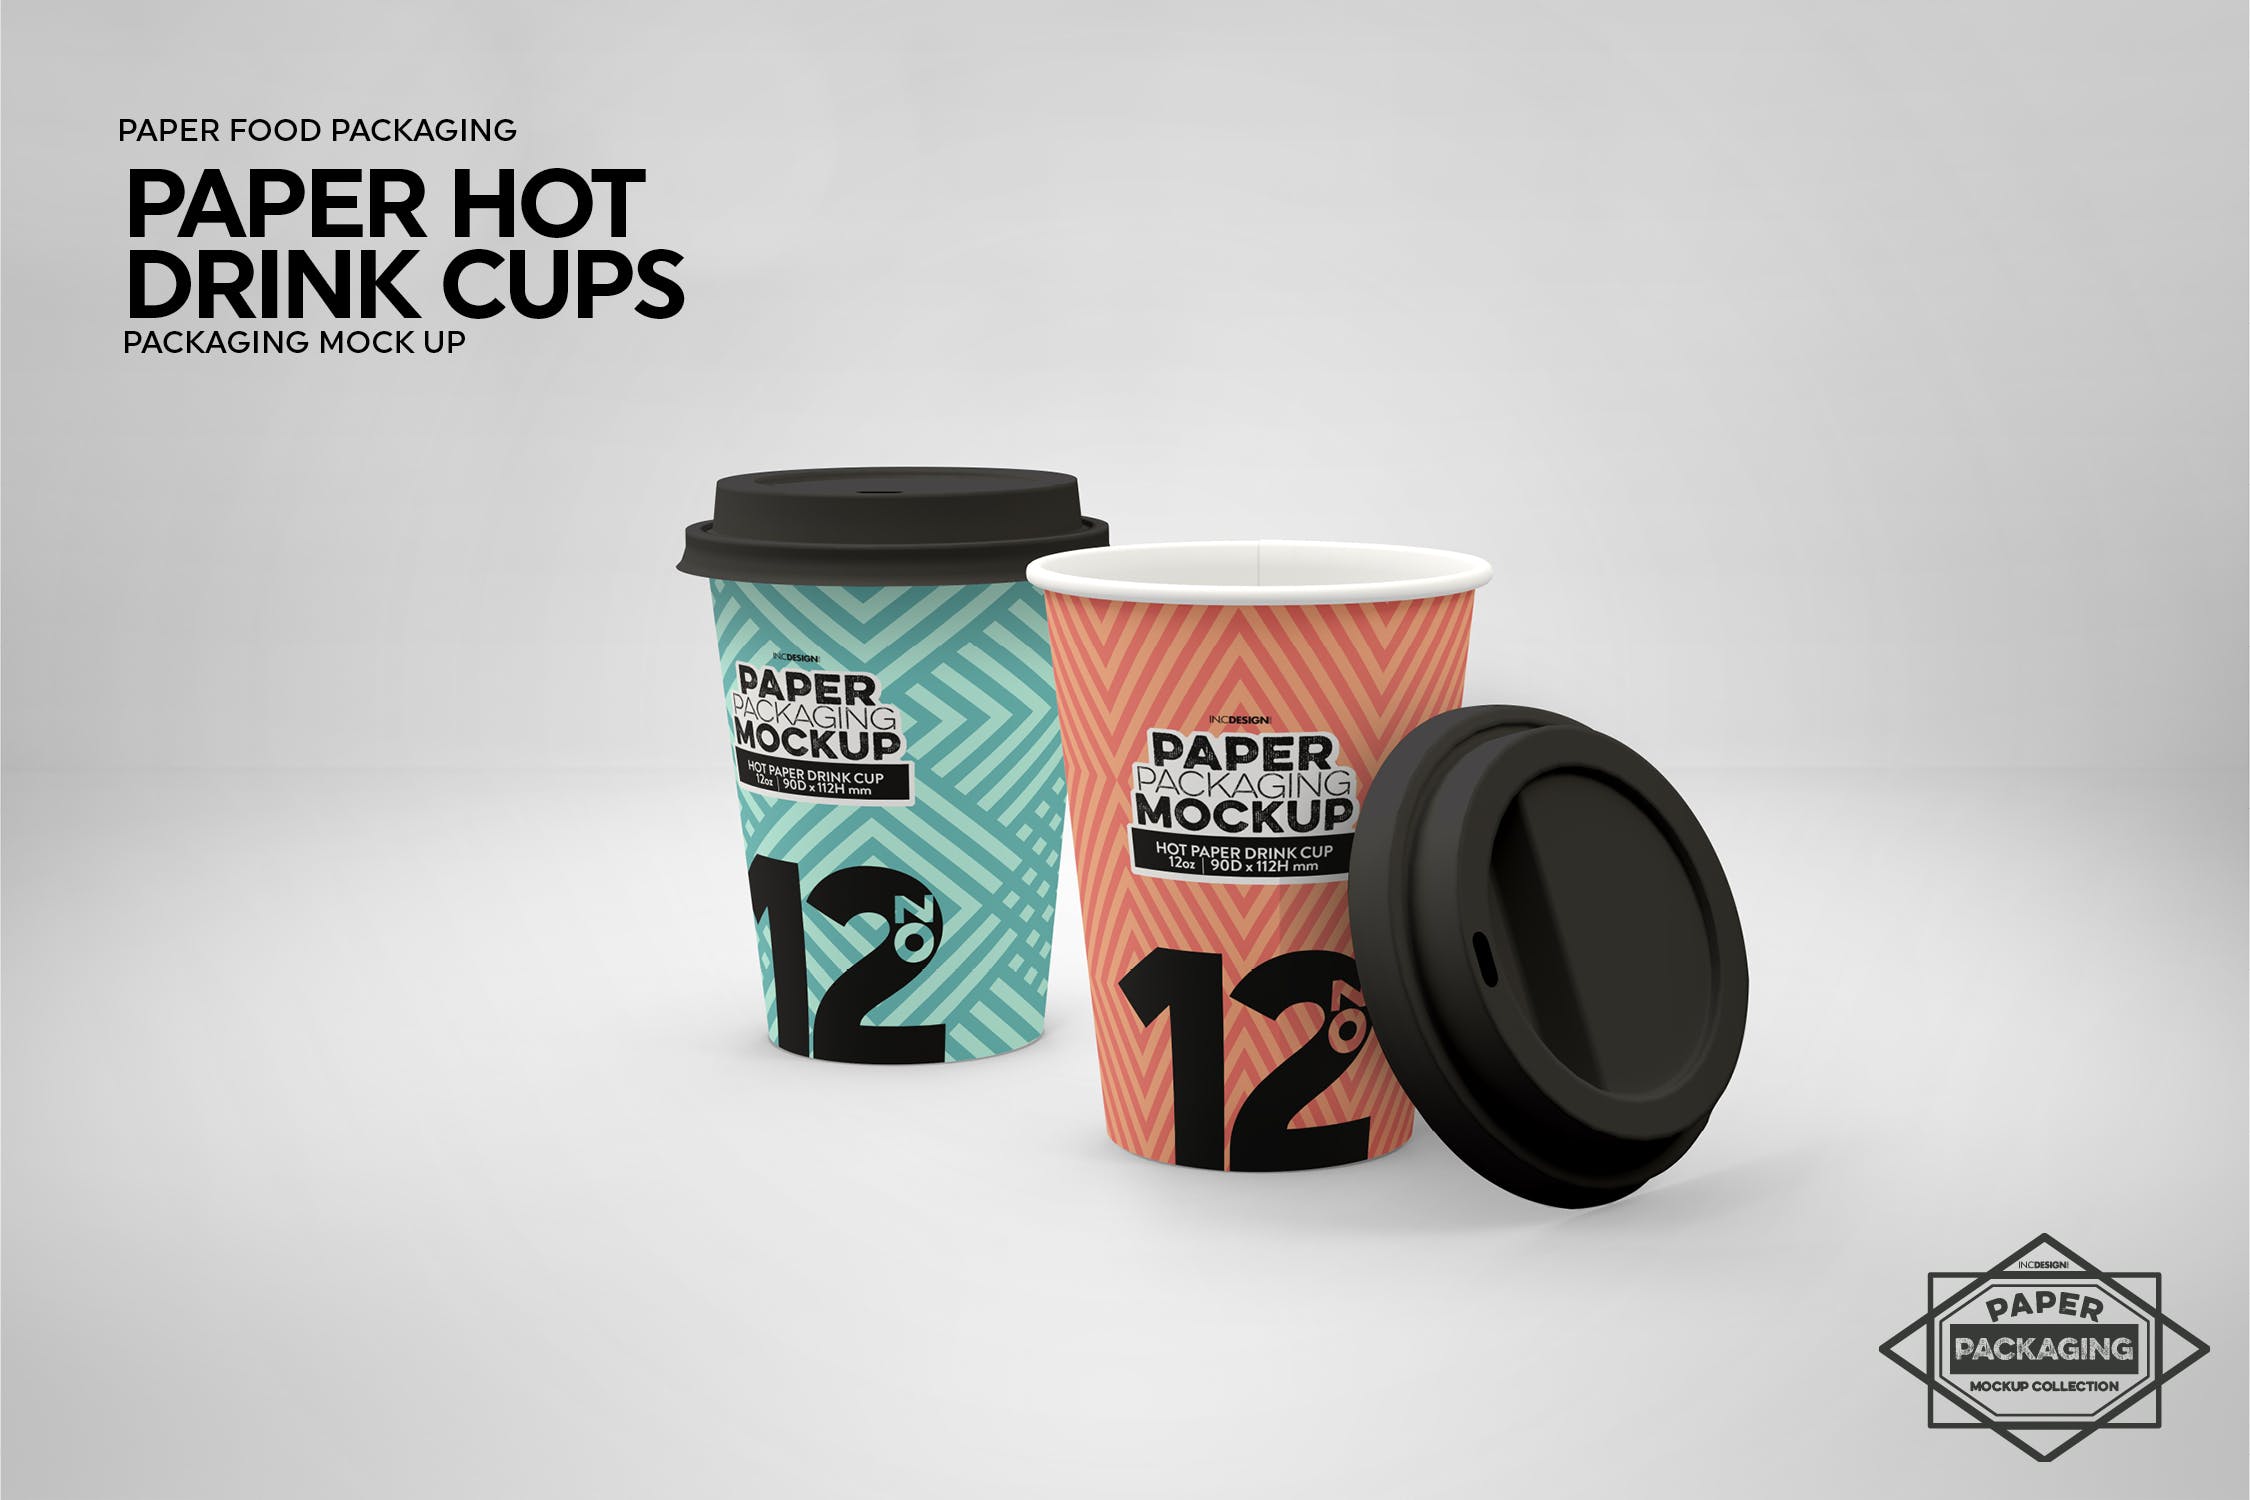 热饮一次性纸杯外观设计素材库精选 Paper Hot Drink Cups Packaging Mockup插图(10)